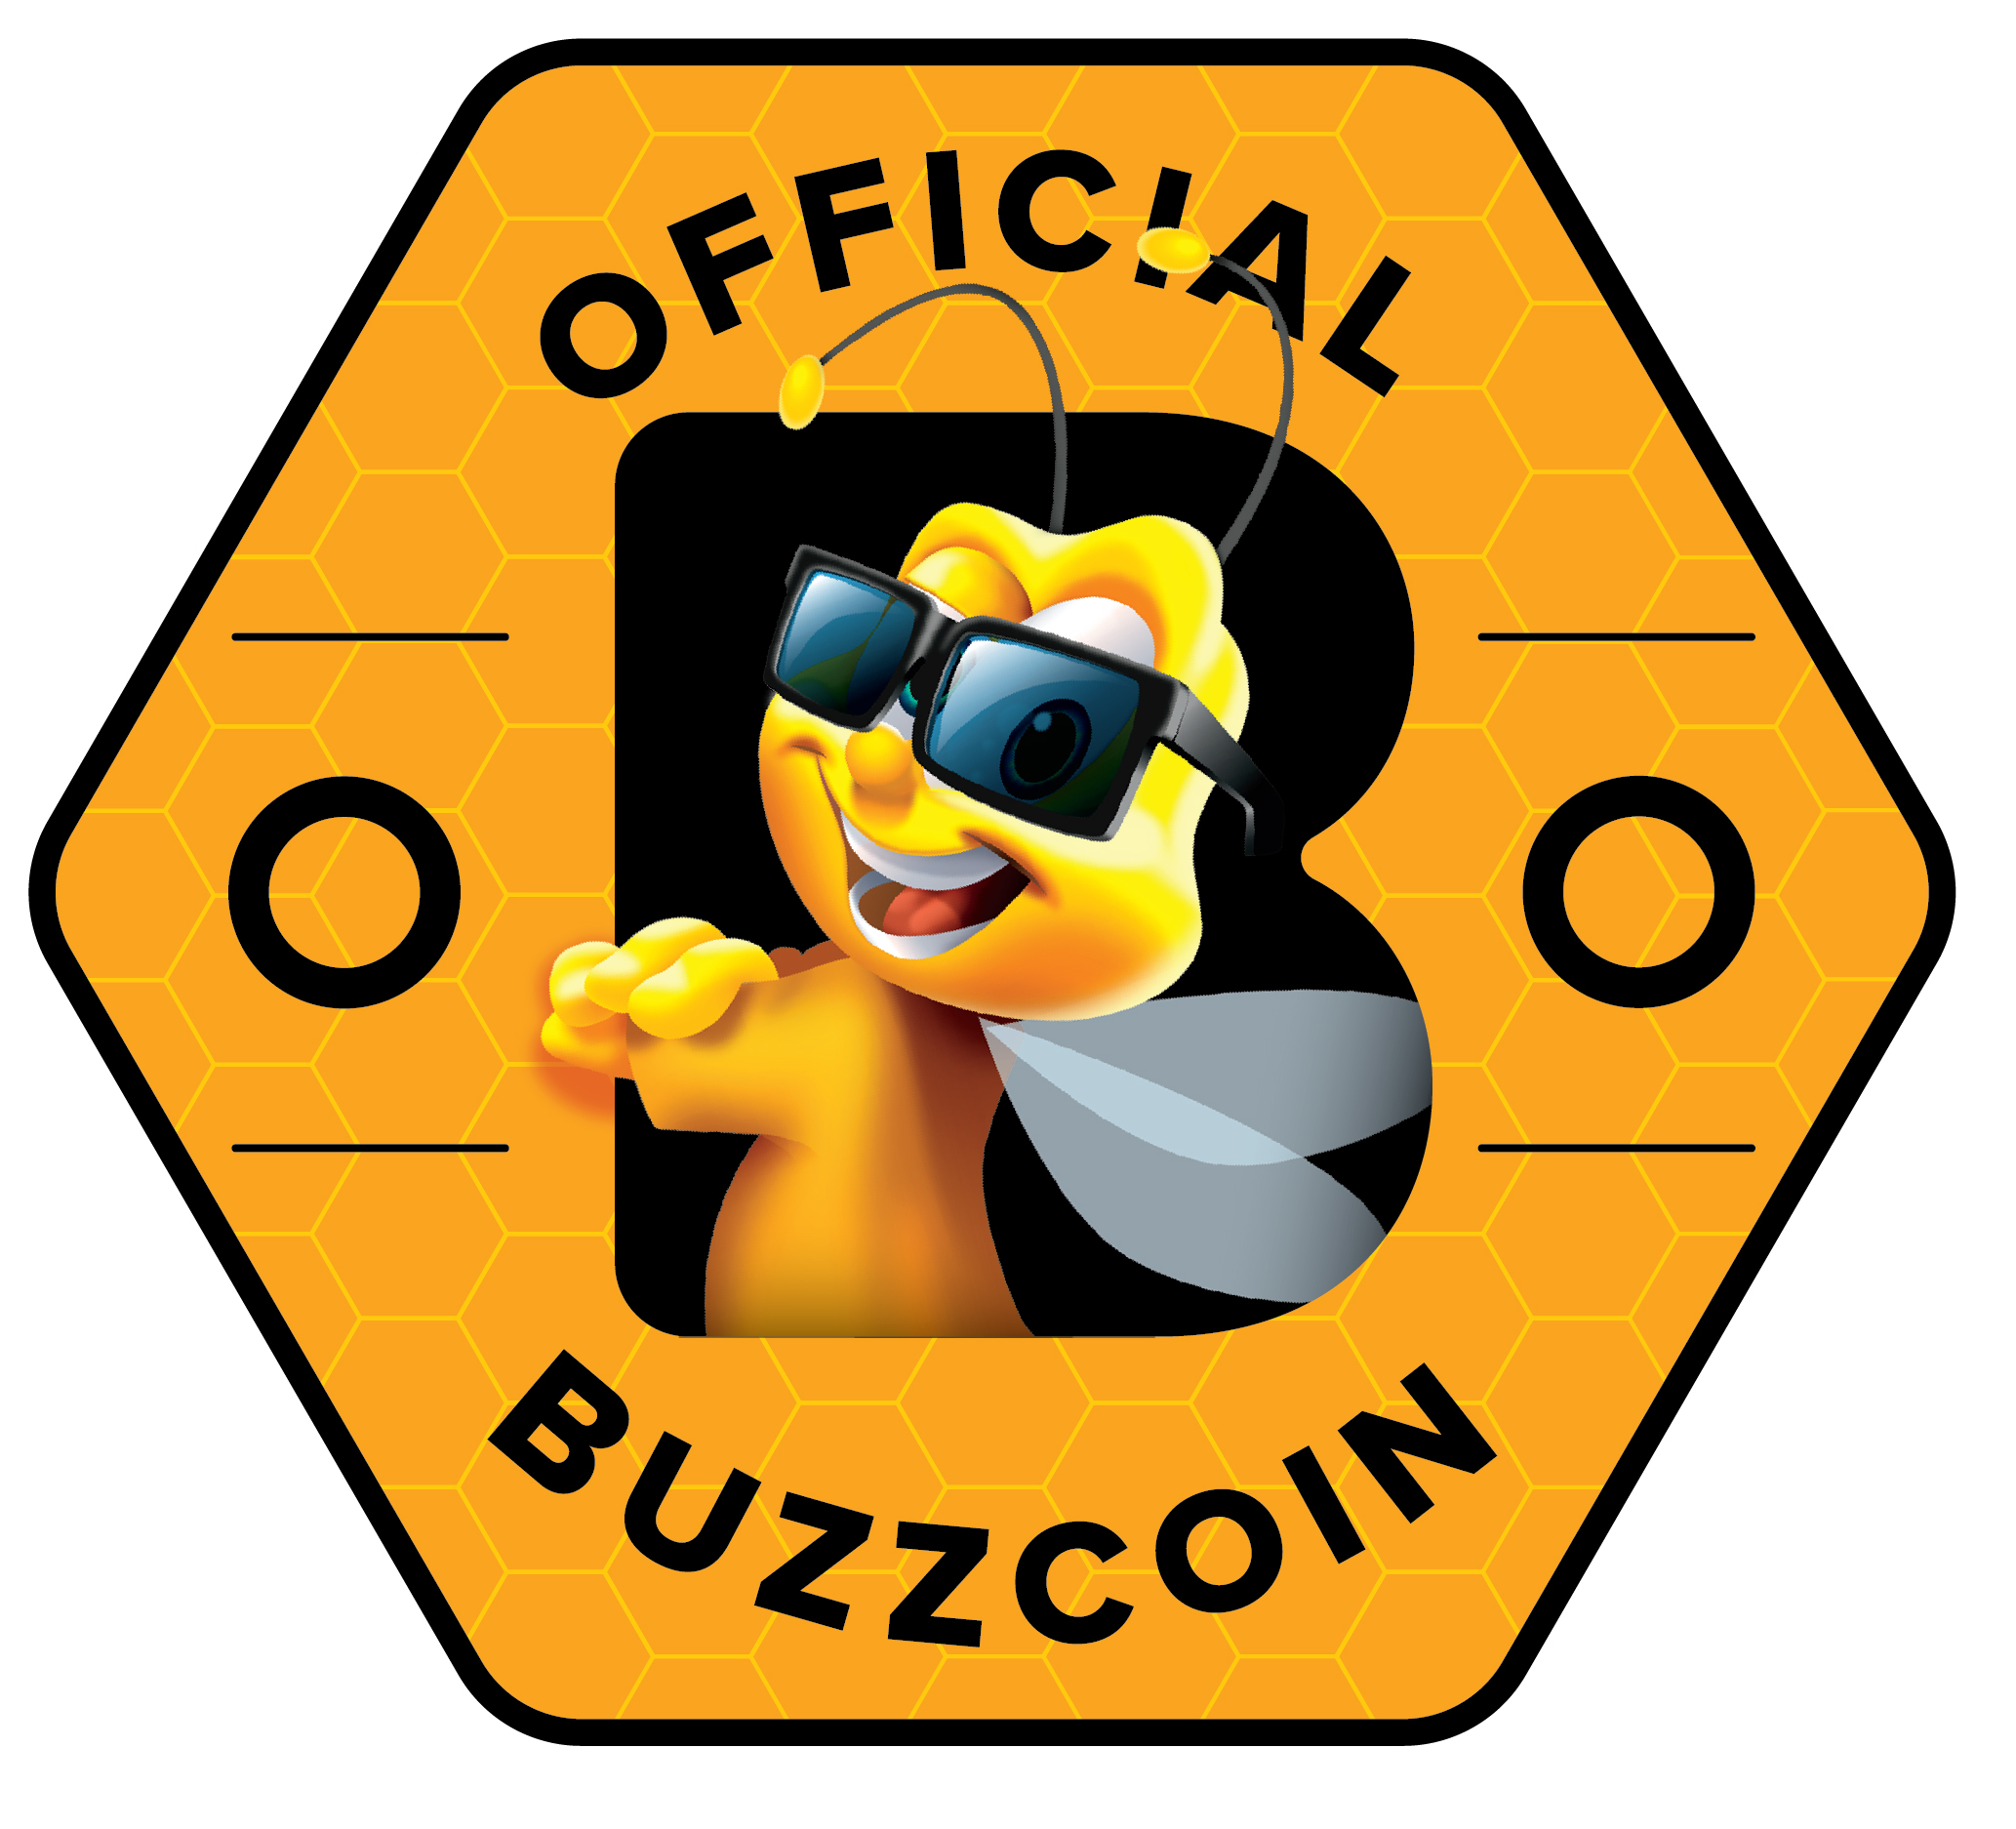 Collect Buzzcoin!